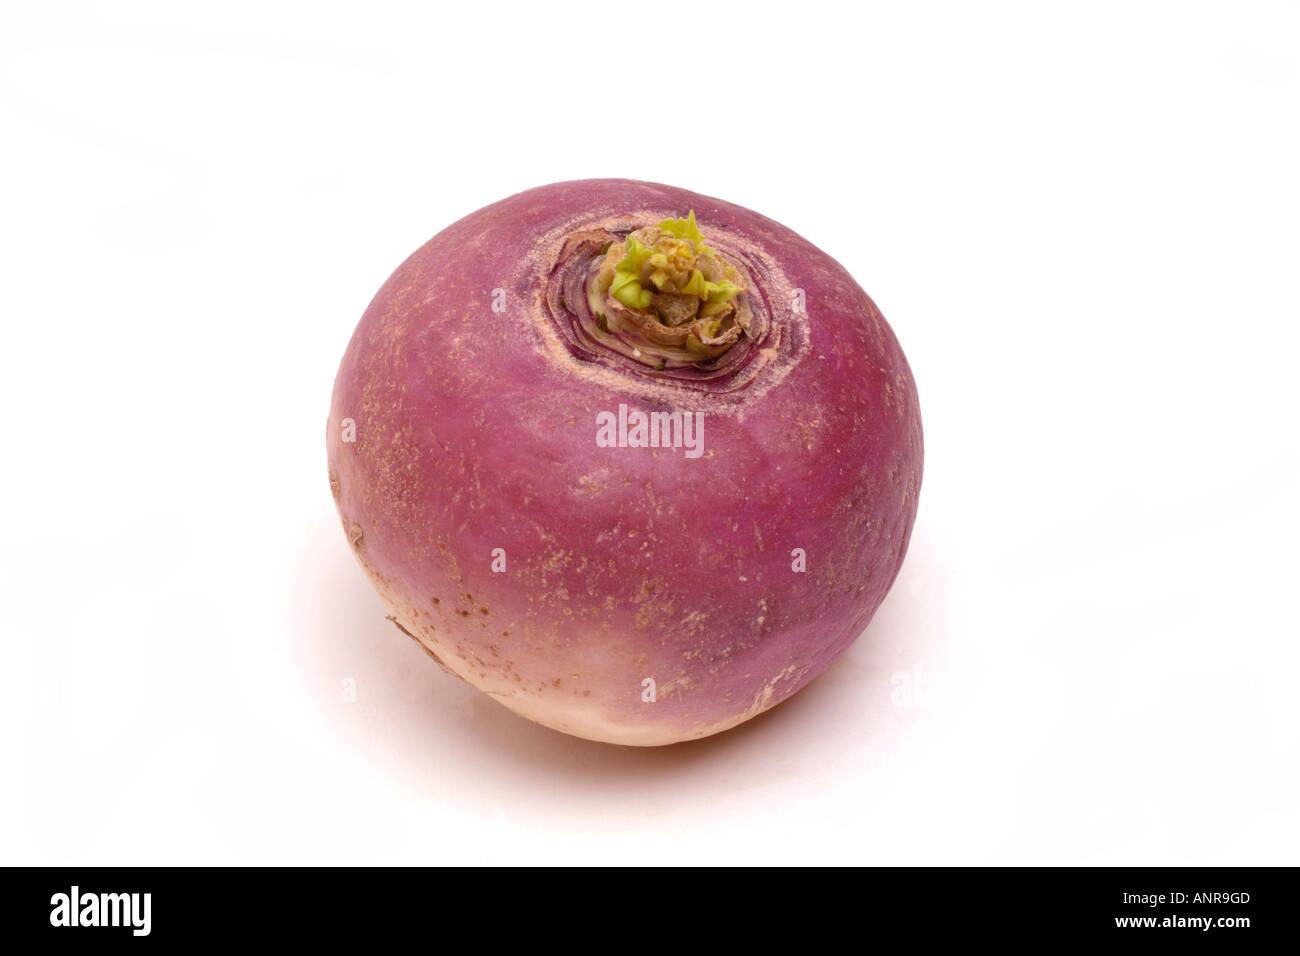 Turnip whole on white background Stock Photo